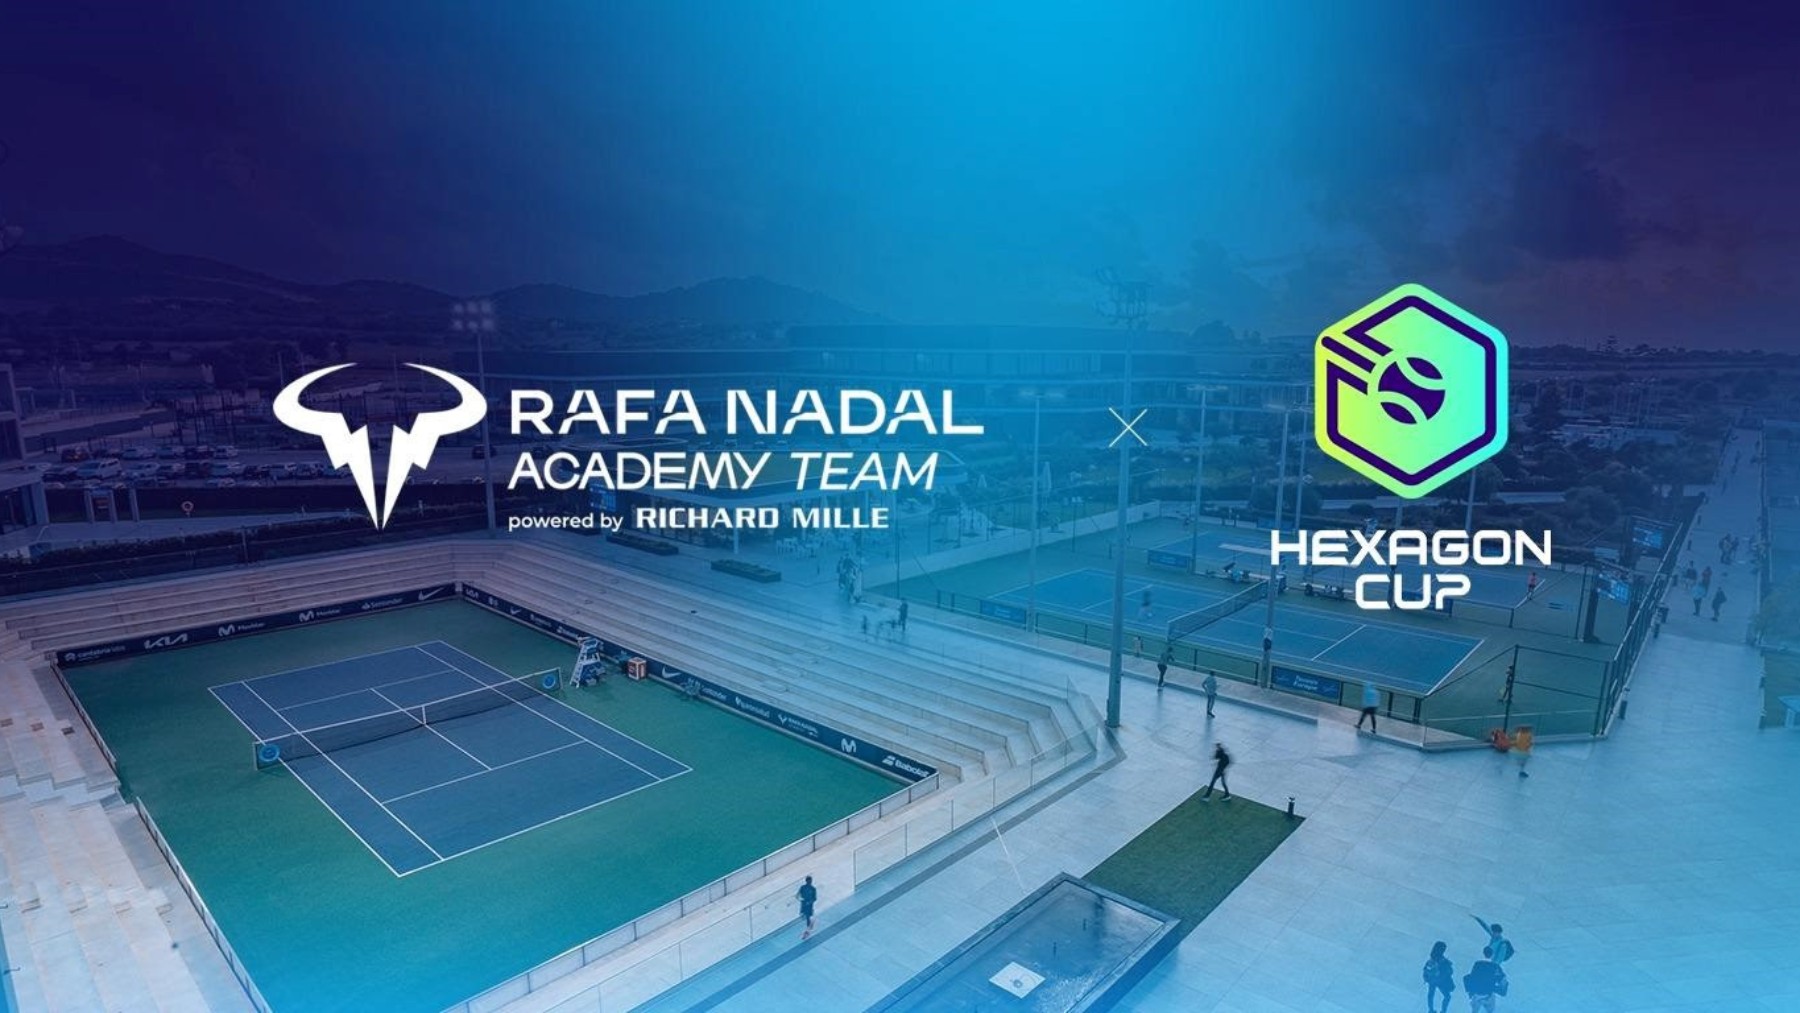 La Rafa Nadal Academy, nuevo equipo de la Hexagon Cup. (Hexagon Cup)